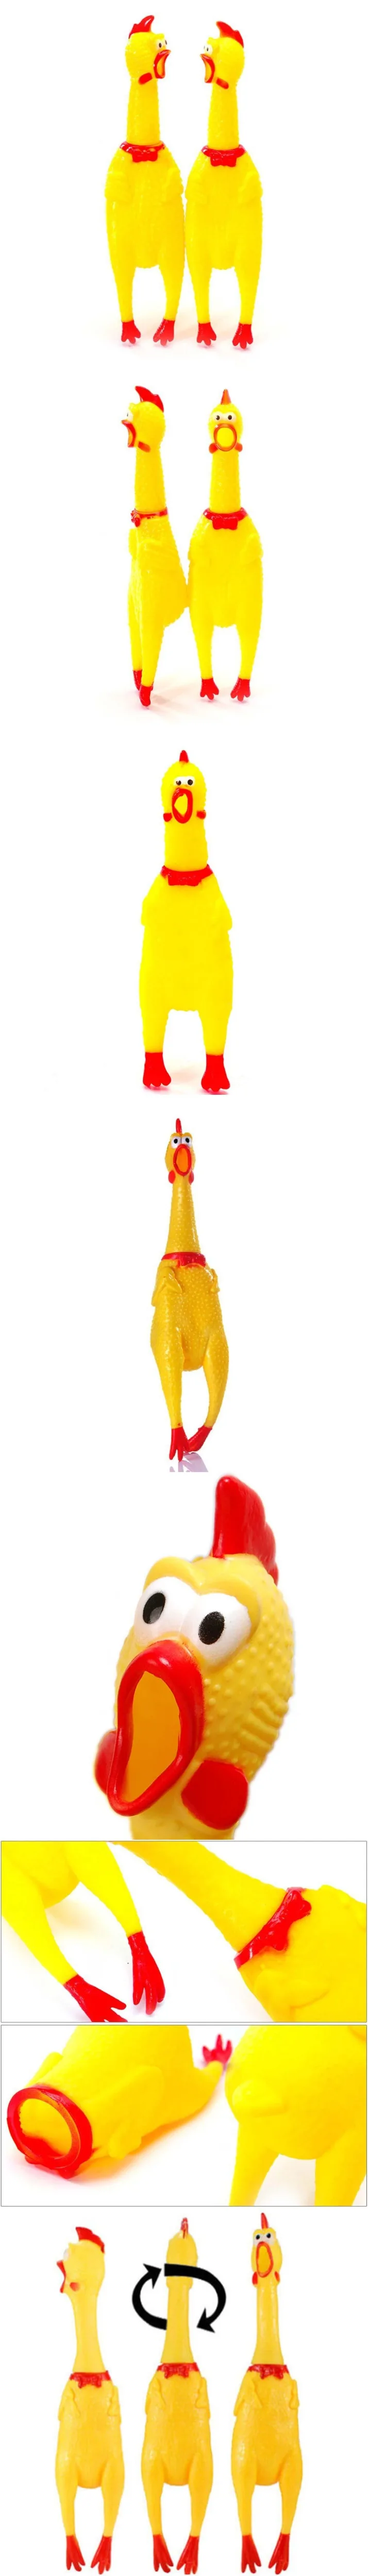 1 шт. кричащая резиновая курица сжимает игрушки приколы практичные шутки для детей взрослых антистрессовая игрушка пронзительный звук желтый цыпленок